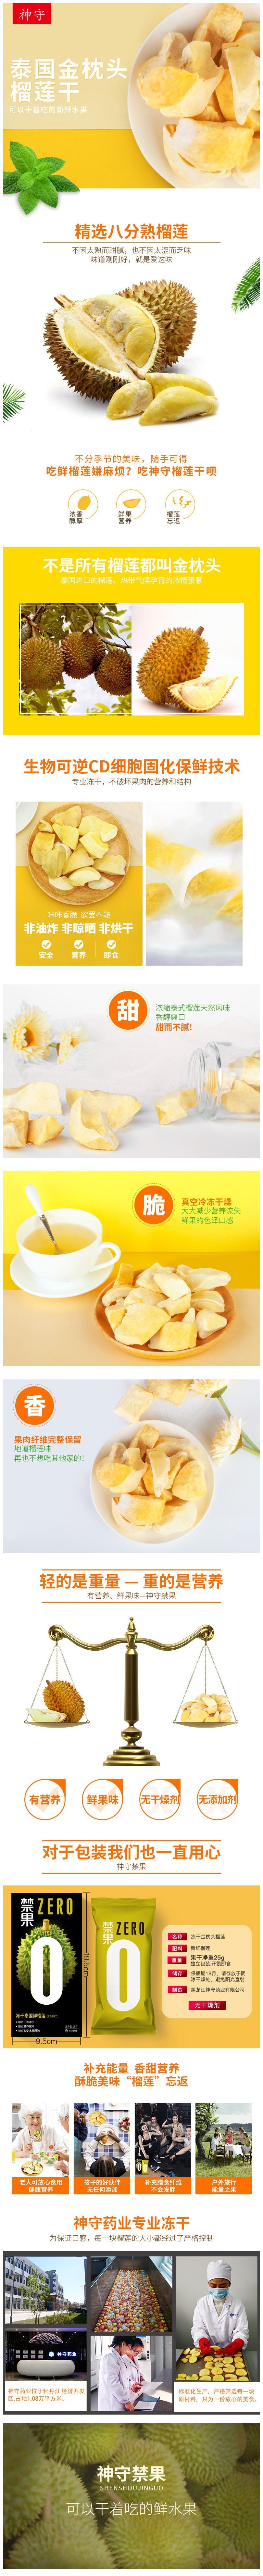 Shenshou dried durian 25gx2